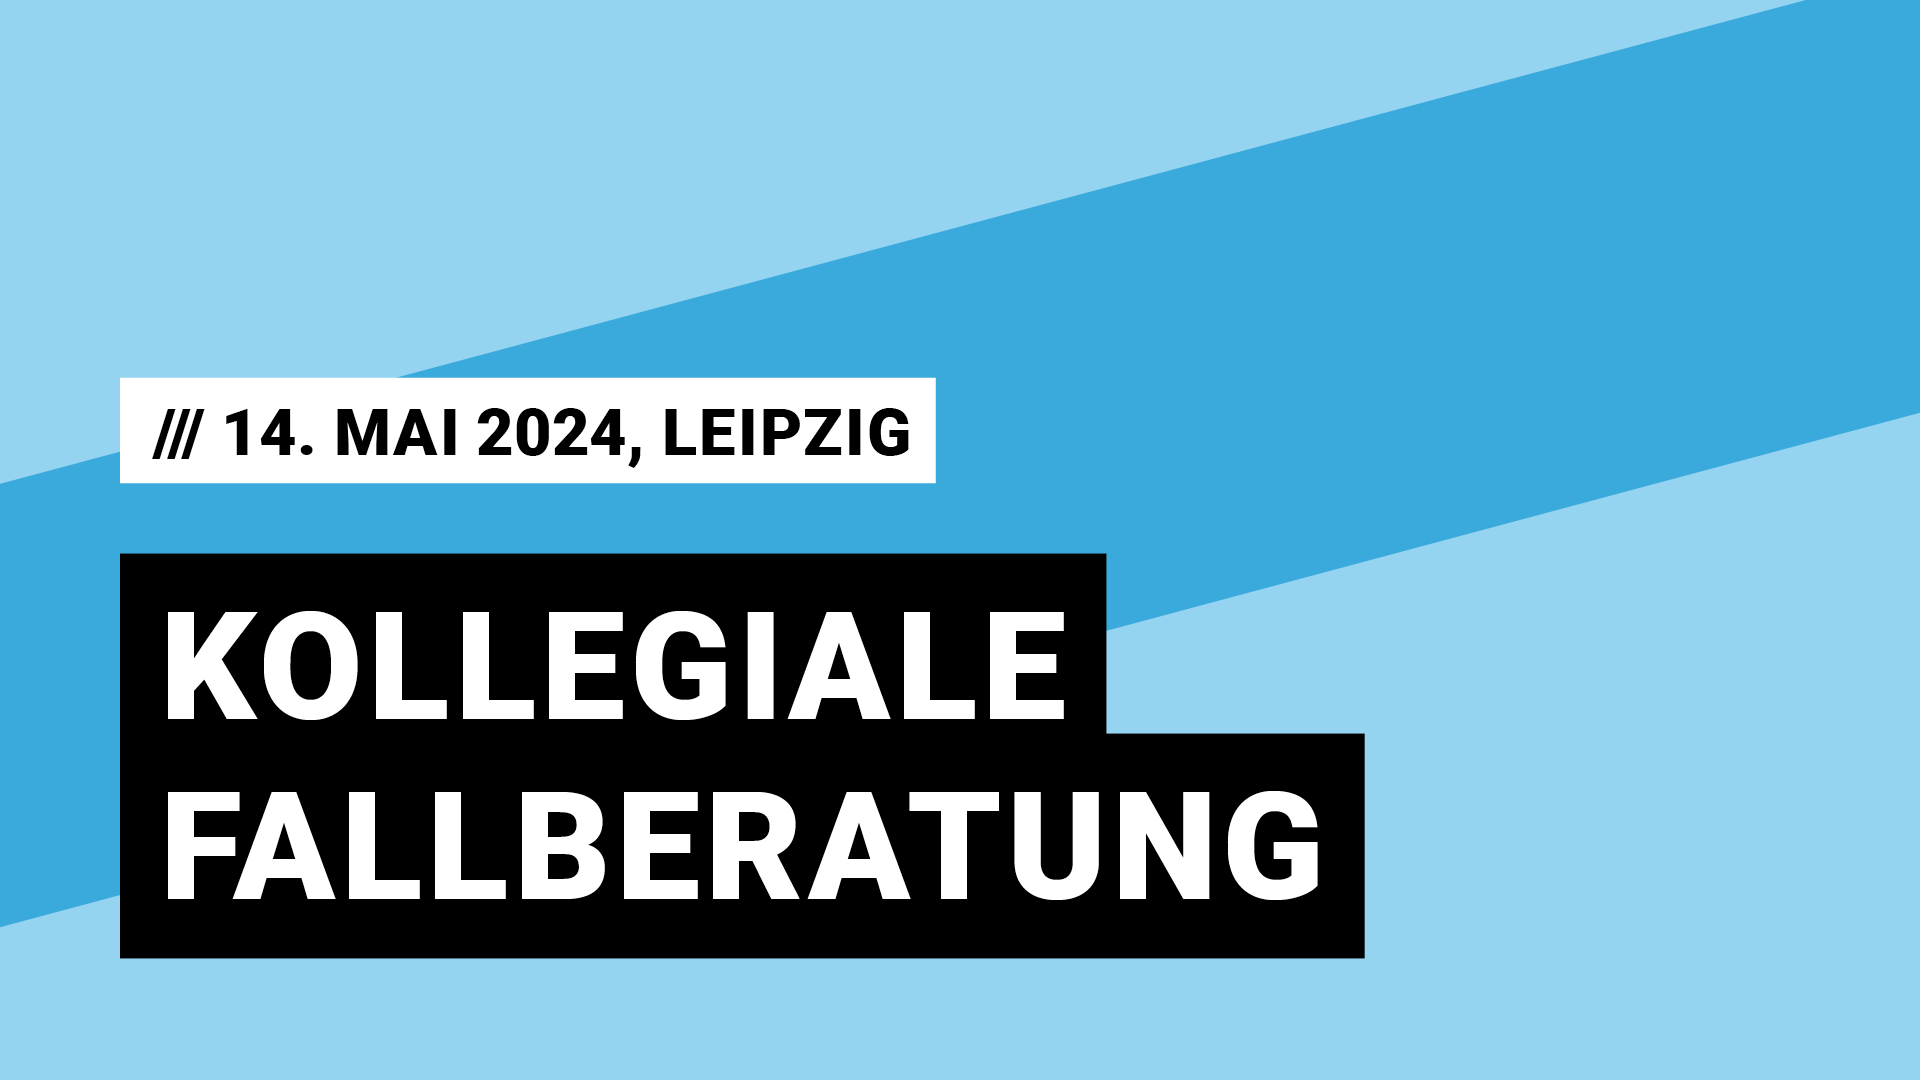 Titelbild Veranstaltung Kollegiale Fallberatung mit Datum 14. Mai 2024 in Leipzig